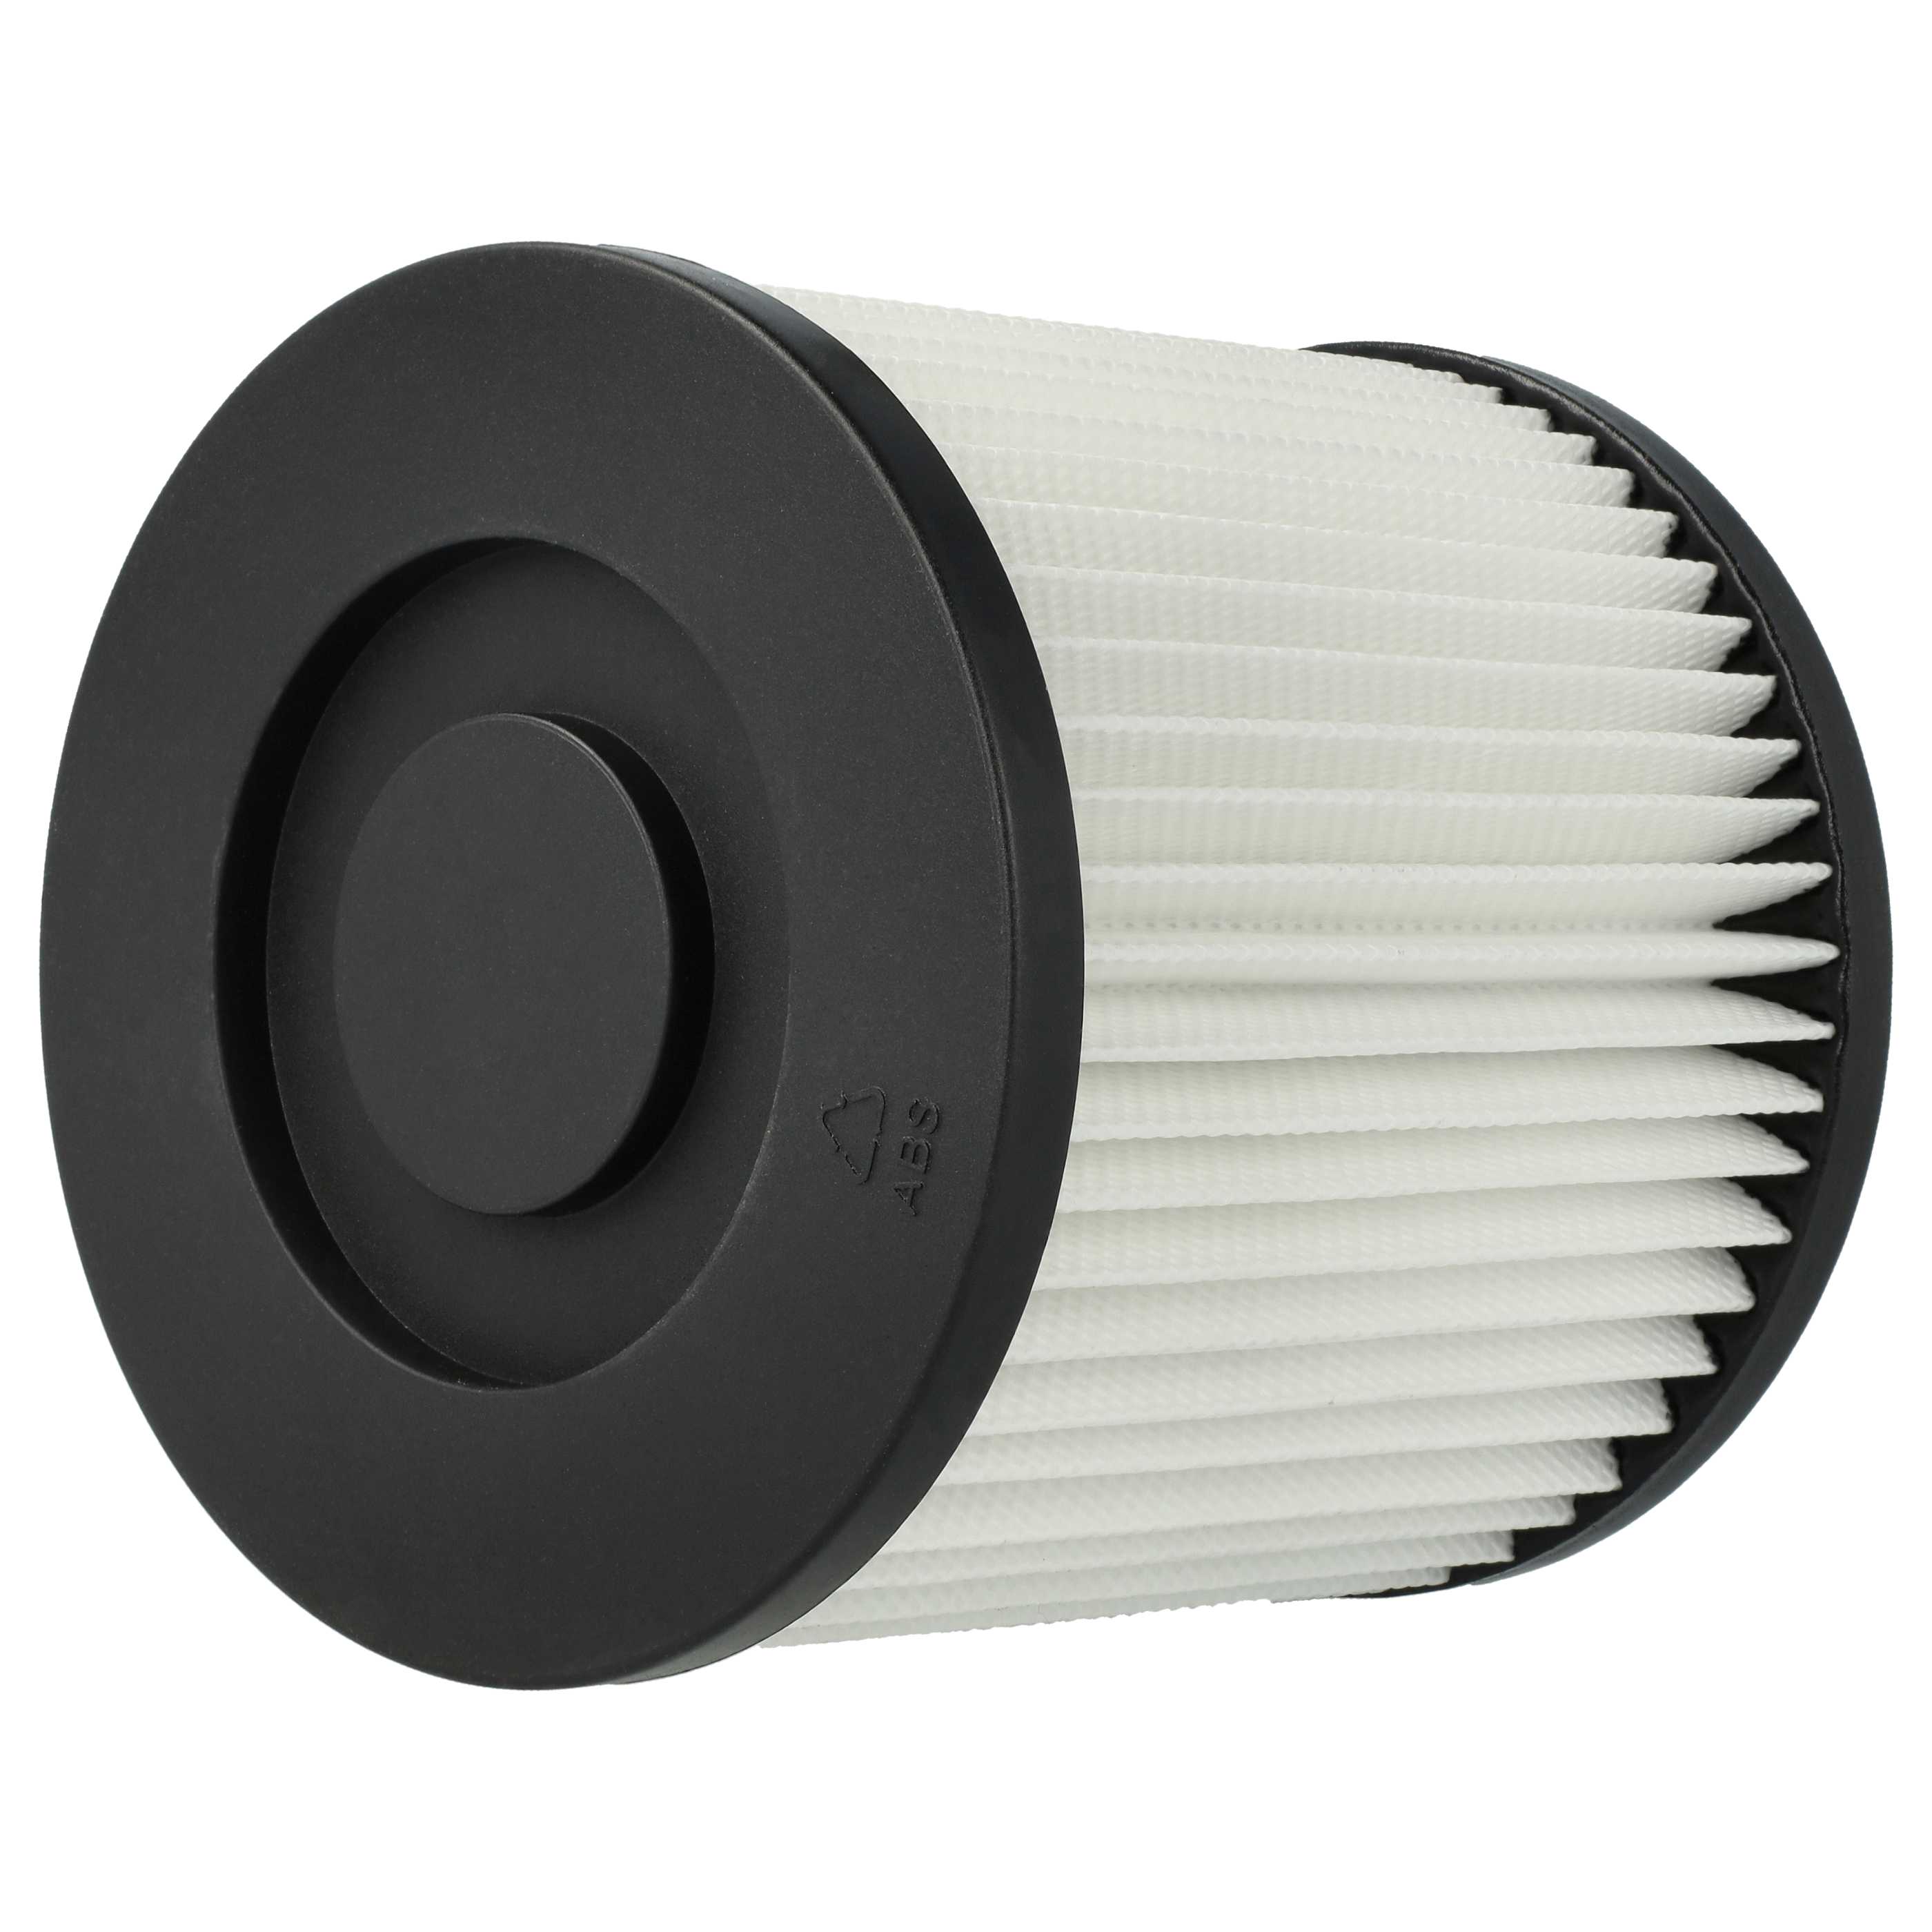 2x Filtro reemplaza Scheppach 7907702702 para aspiradora - filtro Hepa blanco